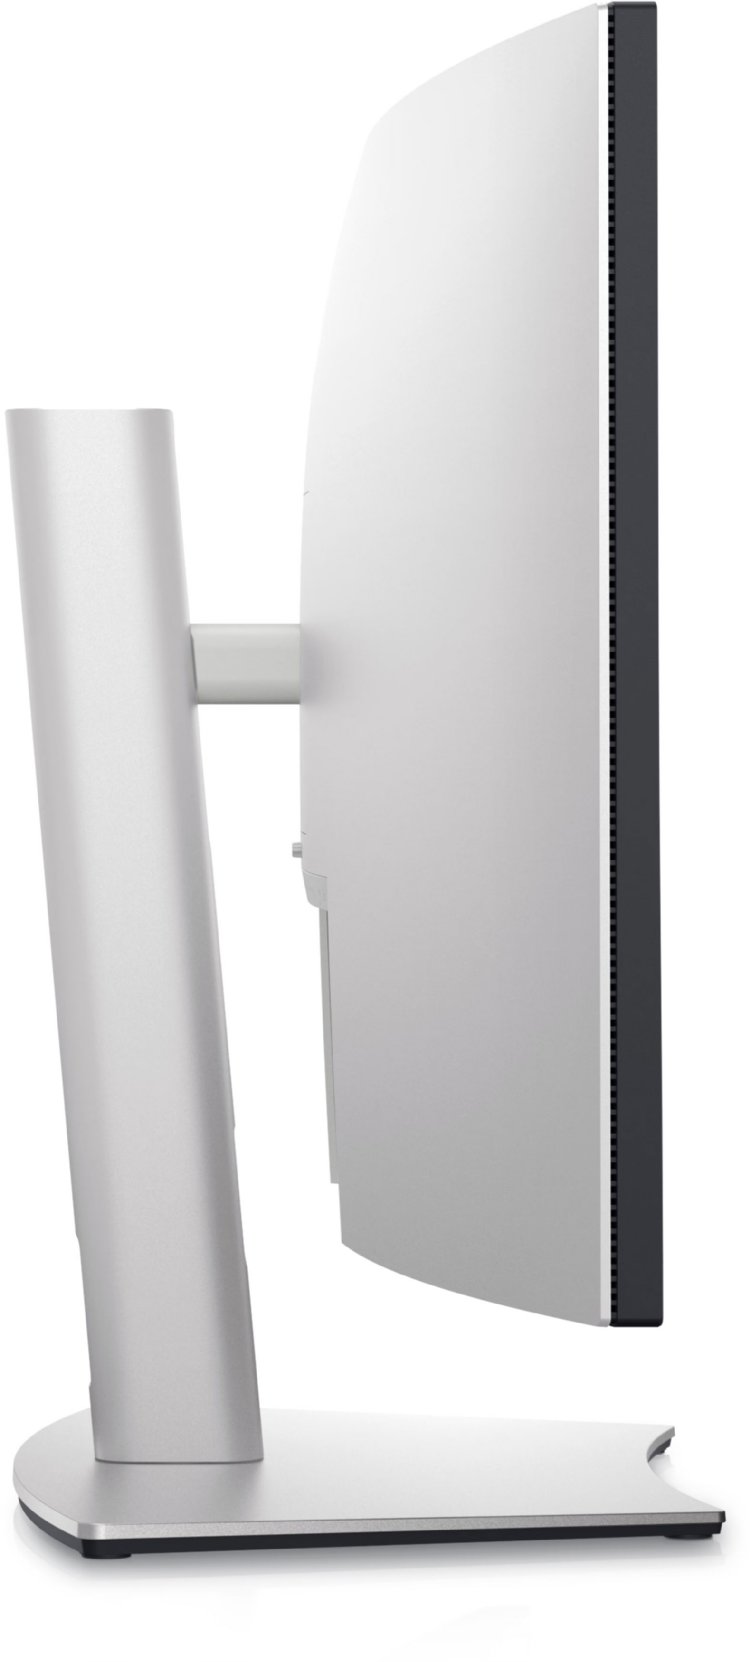 Dell UltraSharp 38" 1600p Curved Monitor, WQHD+ 3840 x 1600 at 60 Hz, 2300R Curvature, 1.07 Billion Color, HDMI 2.1, DisplayPort 1.4, 2.5GbE RJ4, USB-C and USB-A 3.2 Gen...